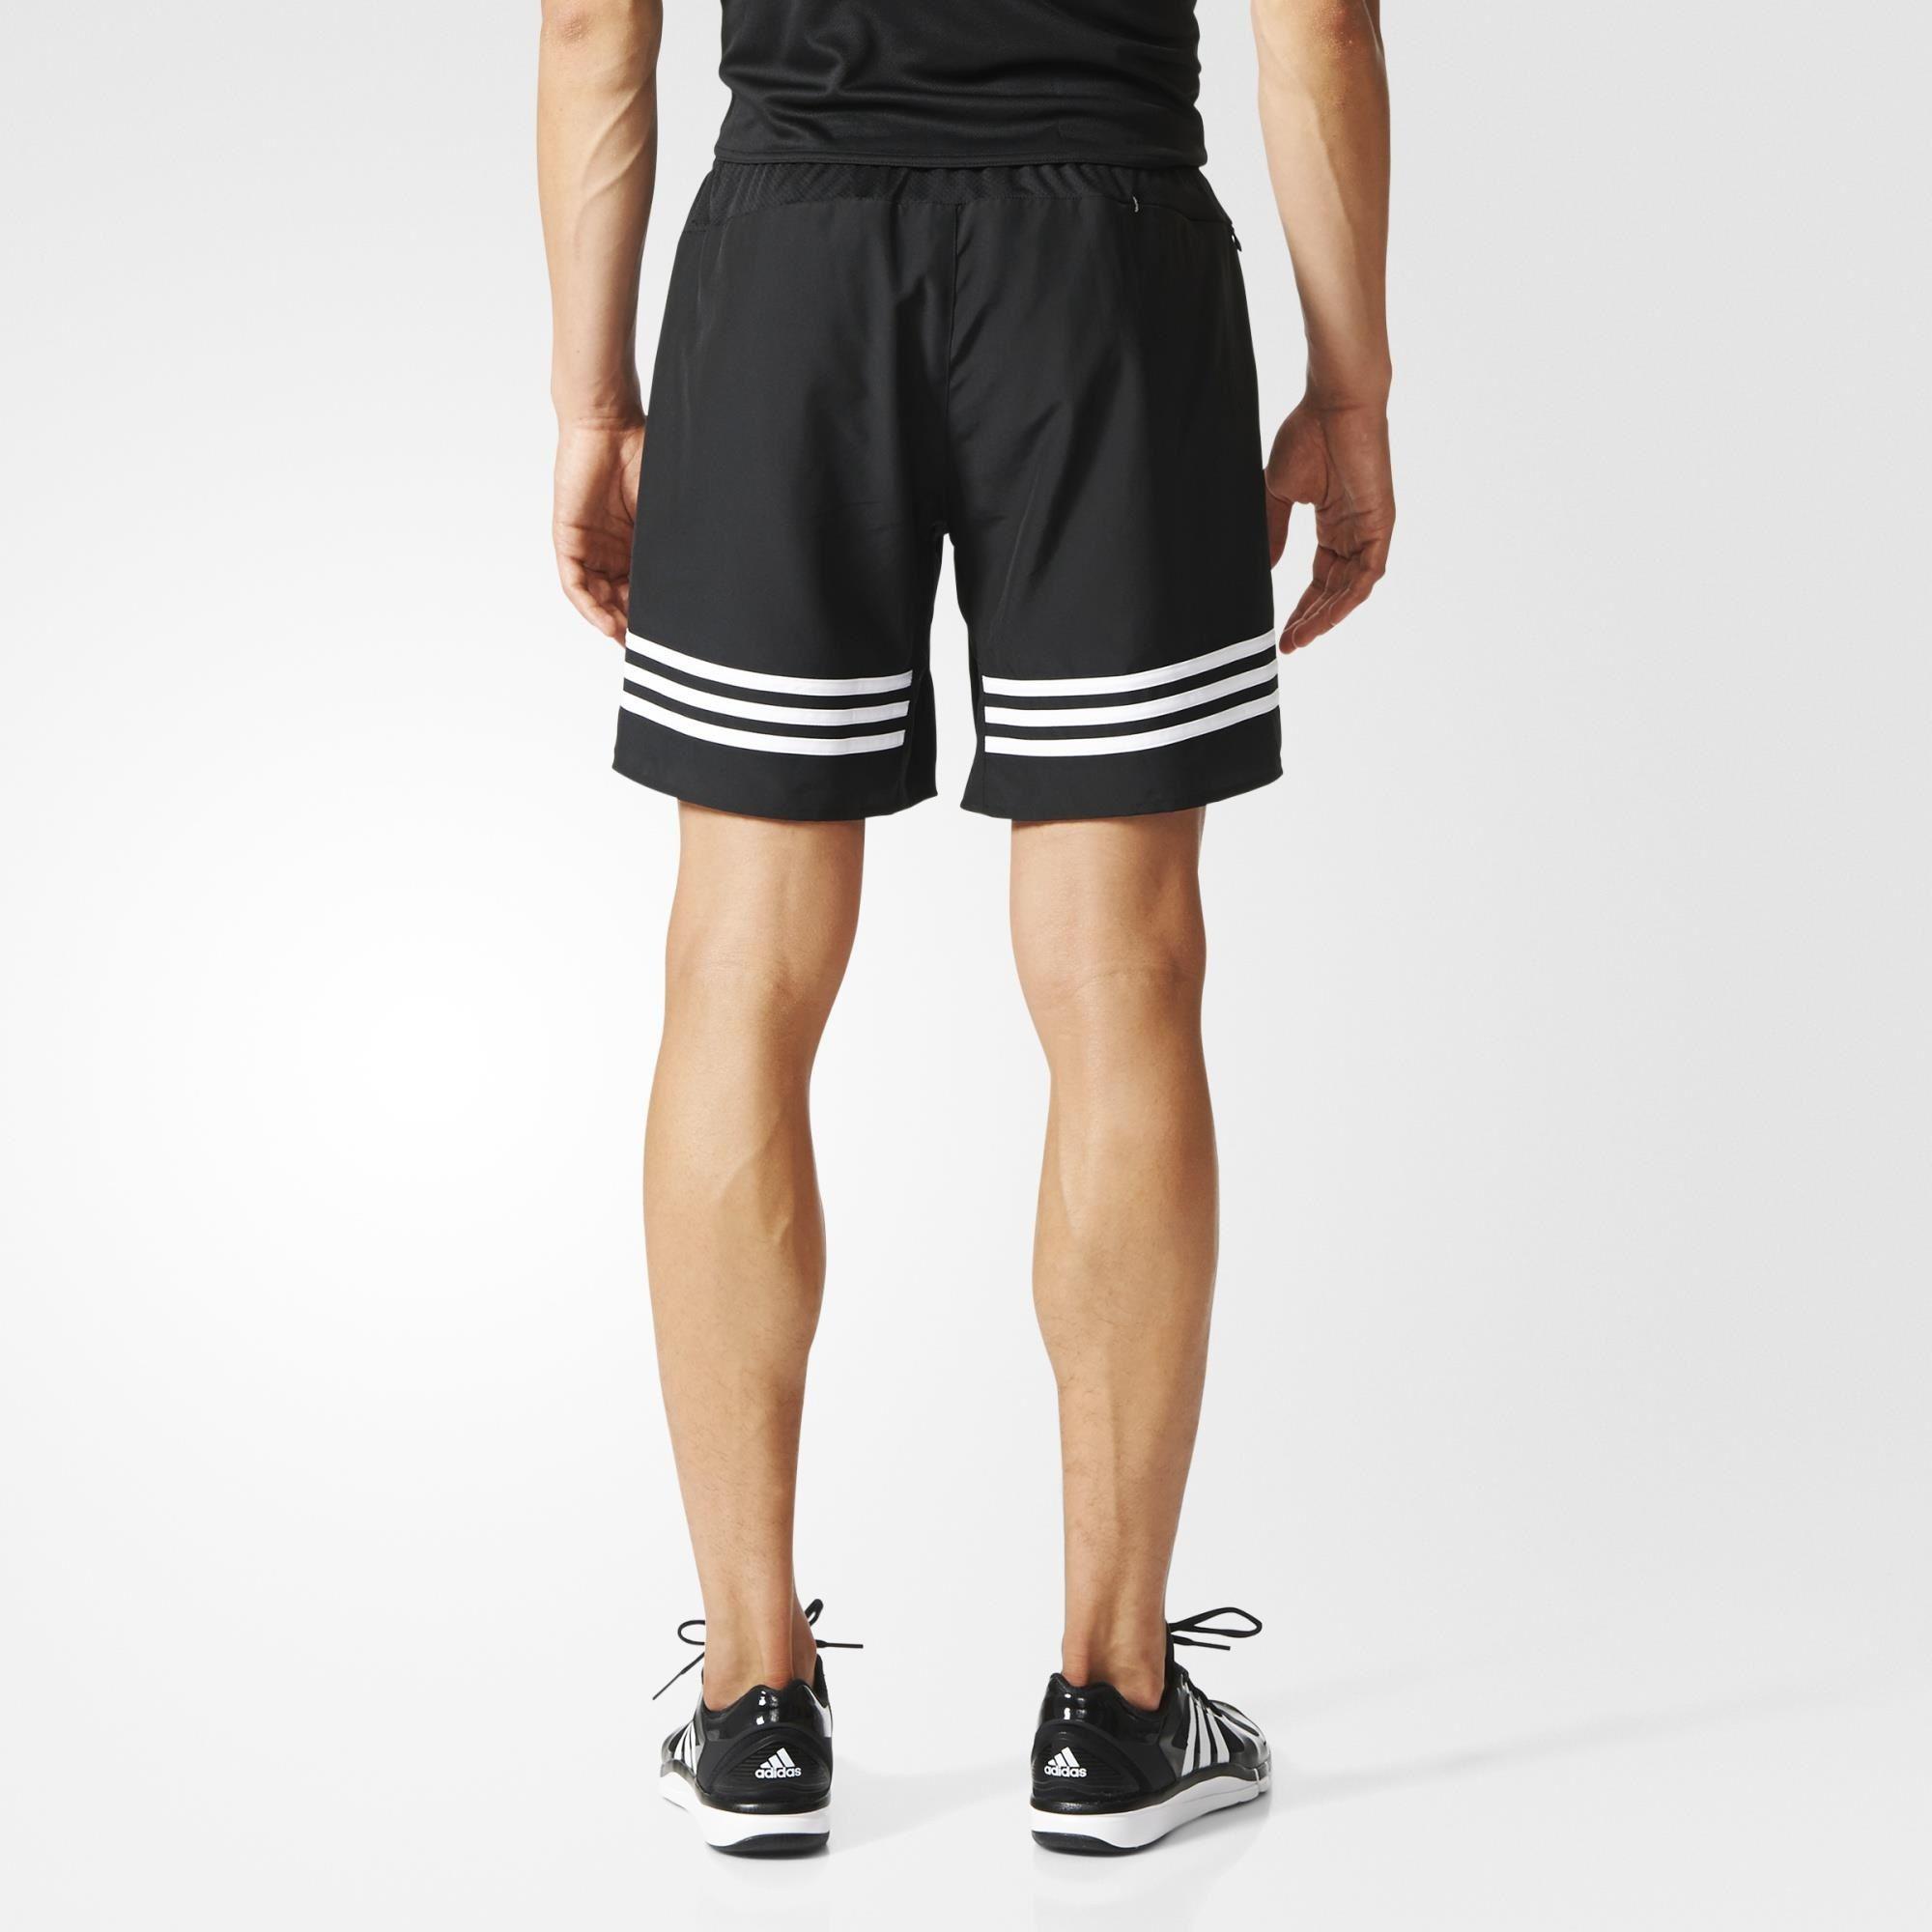 adidas response 7 inch shorts mens